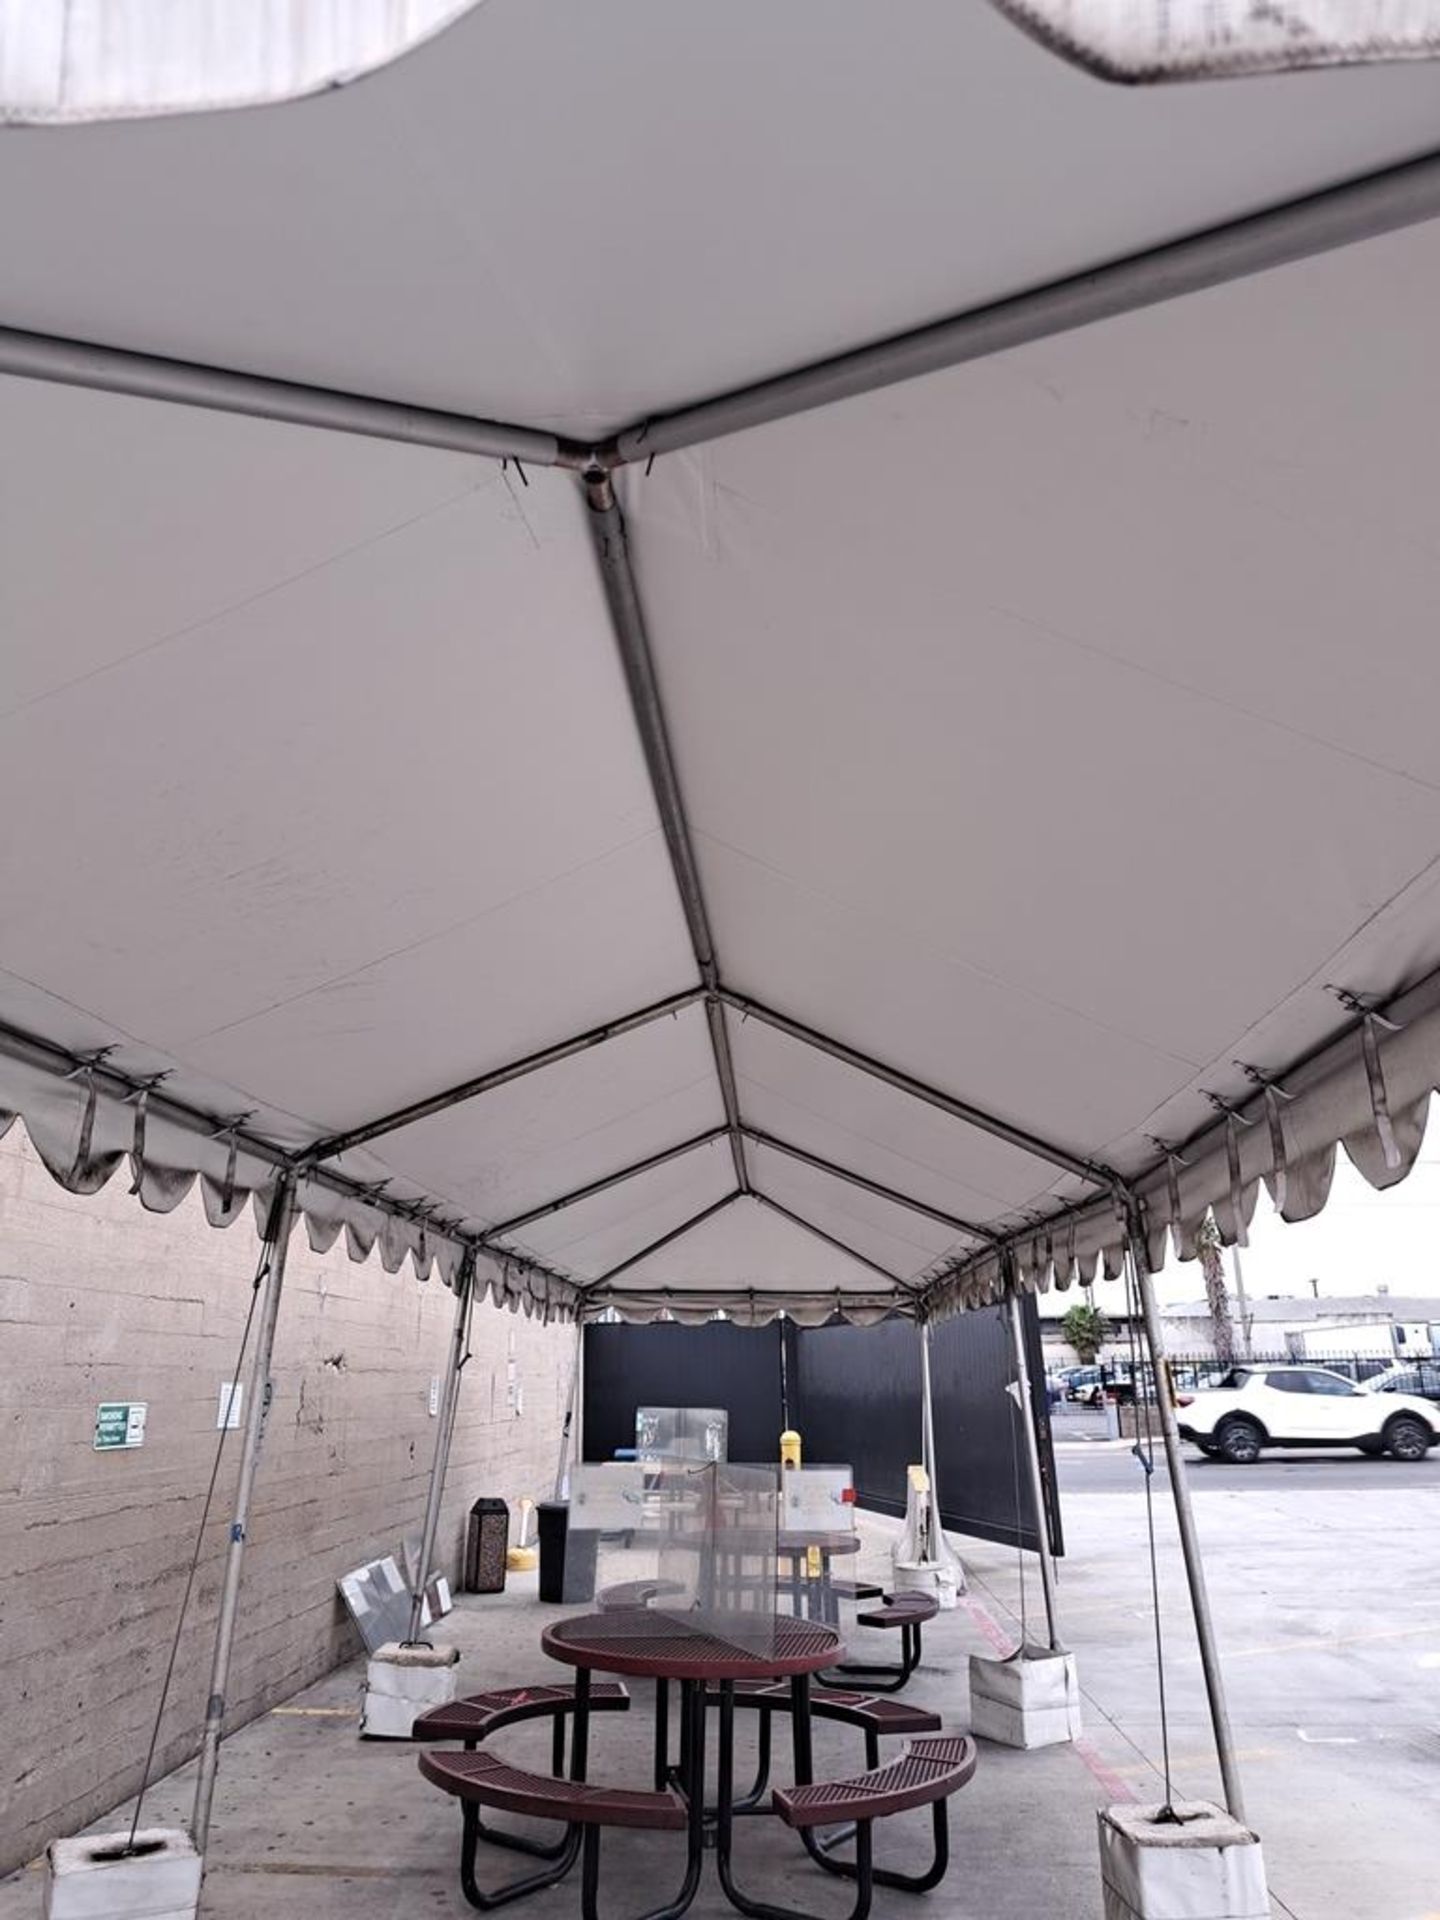 Tentmax Tent, approx. 11' W X 37' L X 10' T, aluminum poles (Contact Norm Pavlish - Nebraska - Image 2 of 2